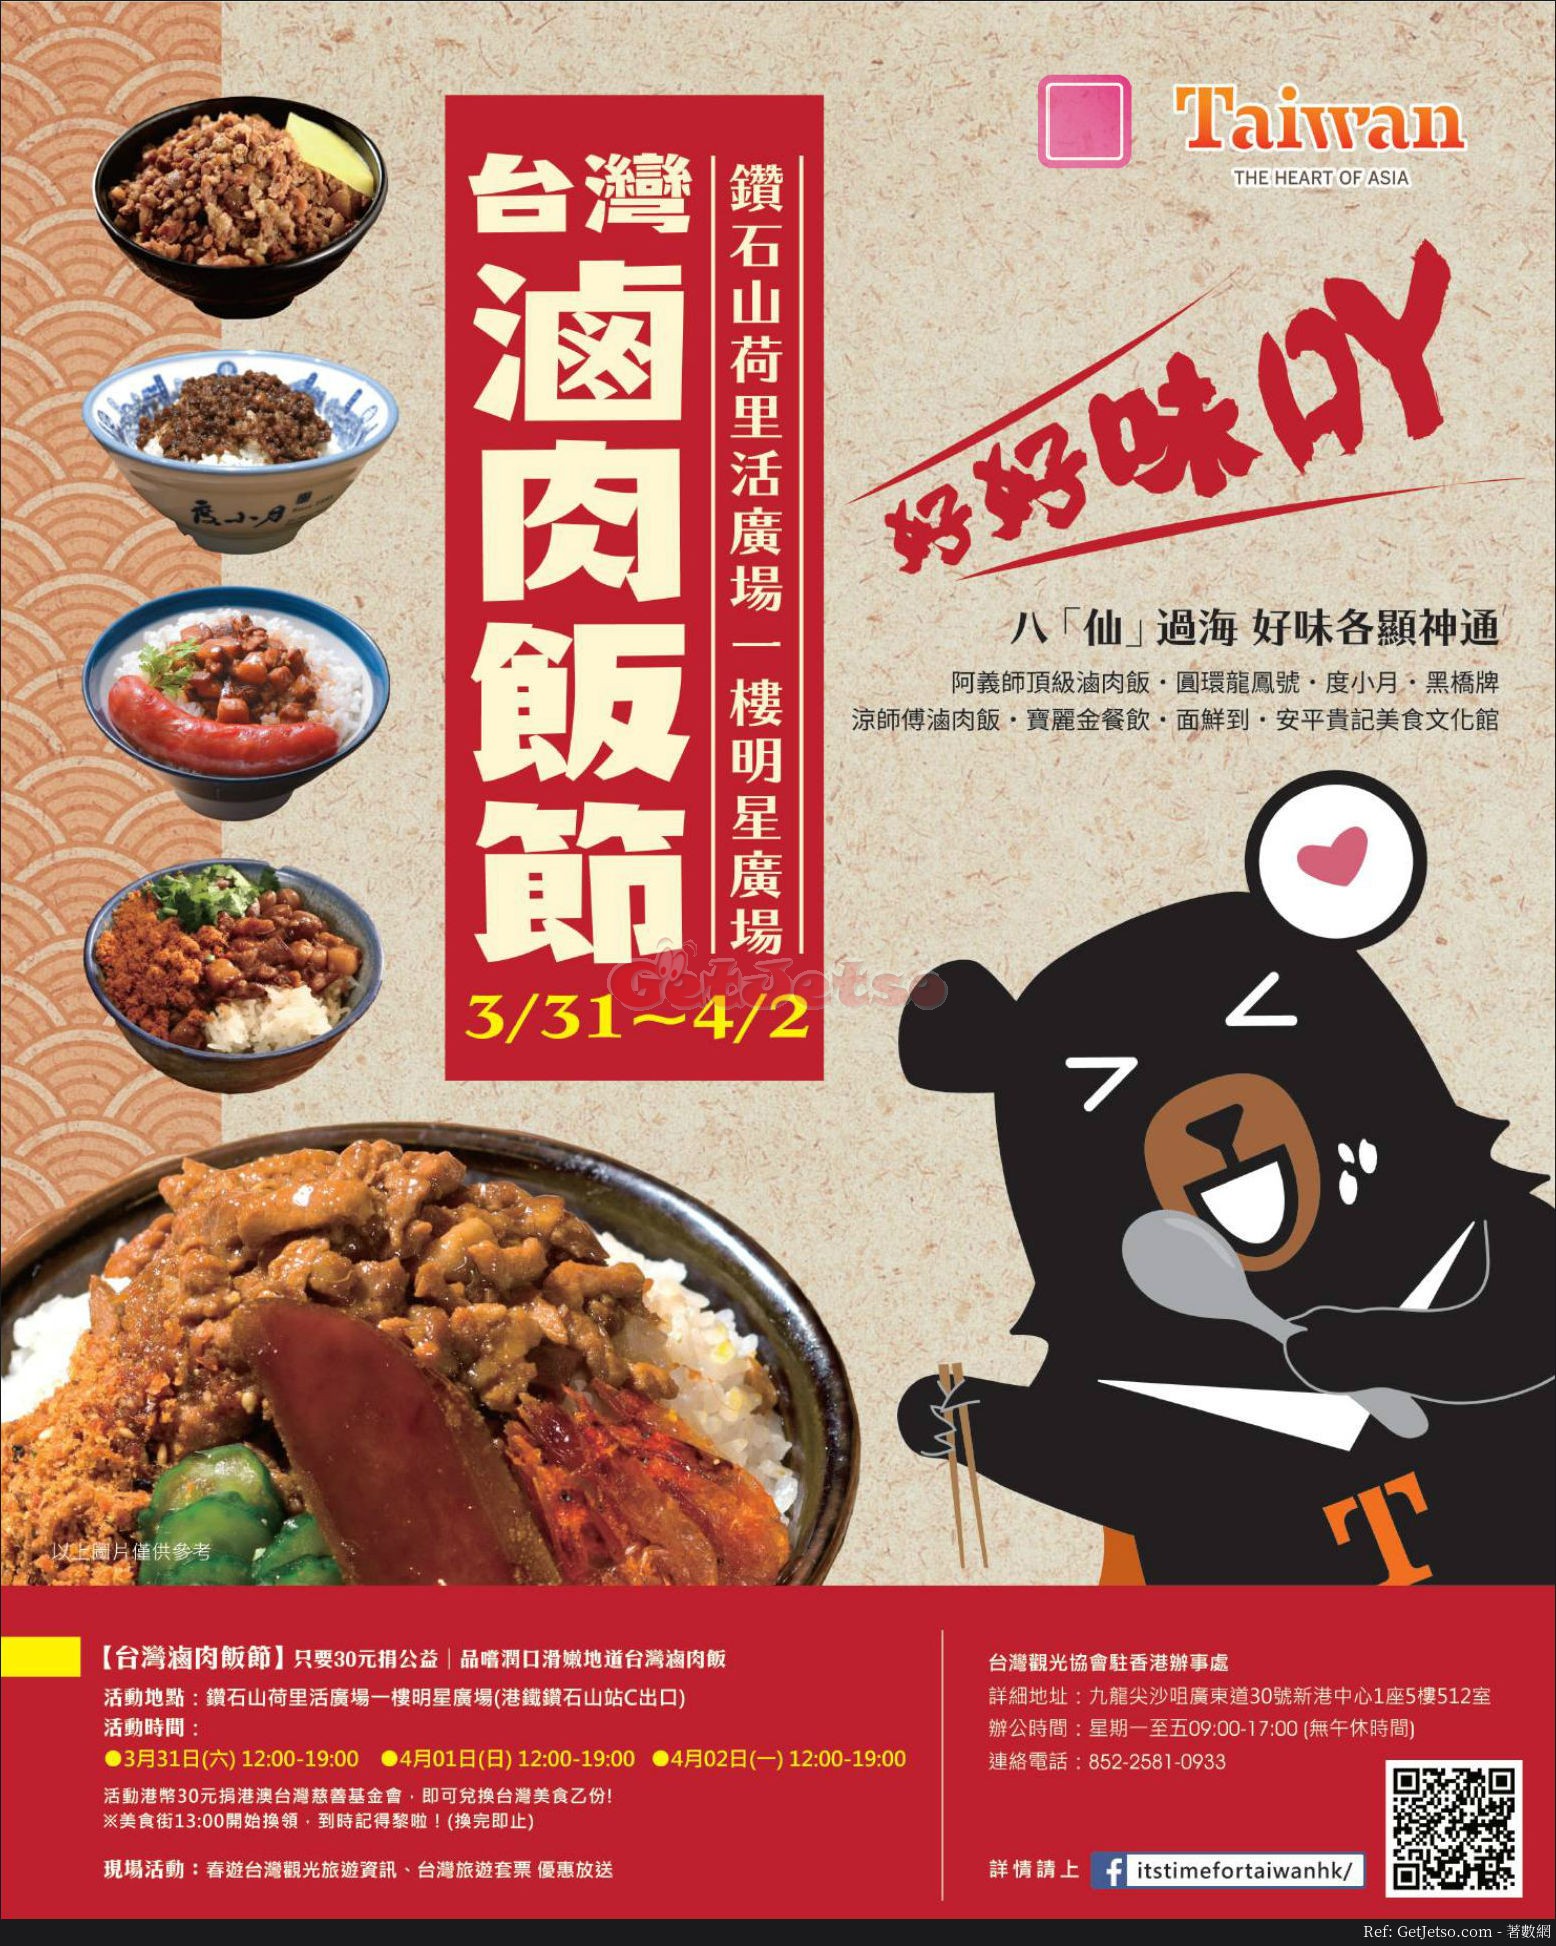 台灣滷肉飯節優惠@荷里活廣場(18年3月31-4月2日)圖片1